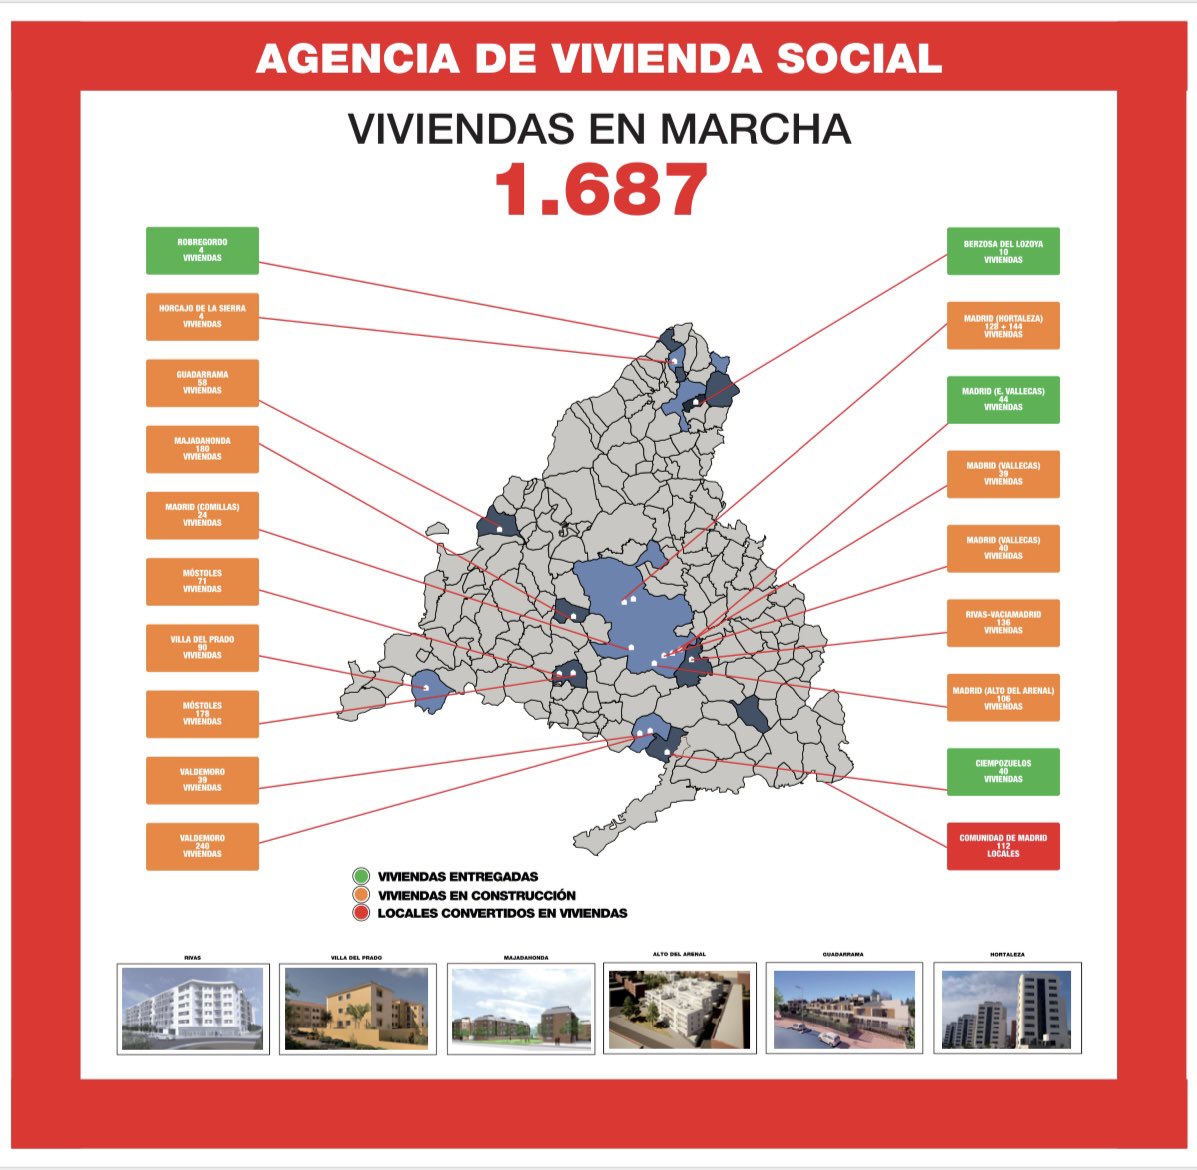 💙💙Se cumple el 1º año de gobierno de @isabeldiazayuso @ppcomunidadmadrid con mayoría absoluta en la Comunidad de Madrid.  

🏠Desde la Agencia de Vivienda Social , ya hemos puesto en marcha 1687 viviendas 🏠 de alquiler asequible en diferentes municipios madrileños